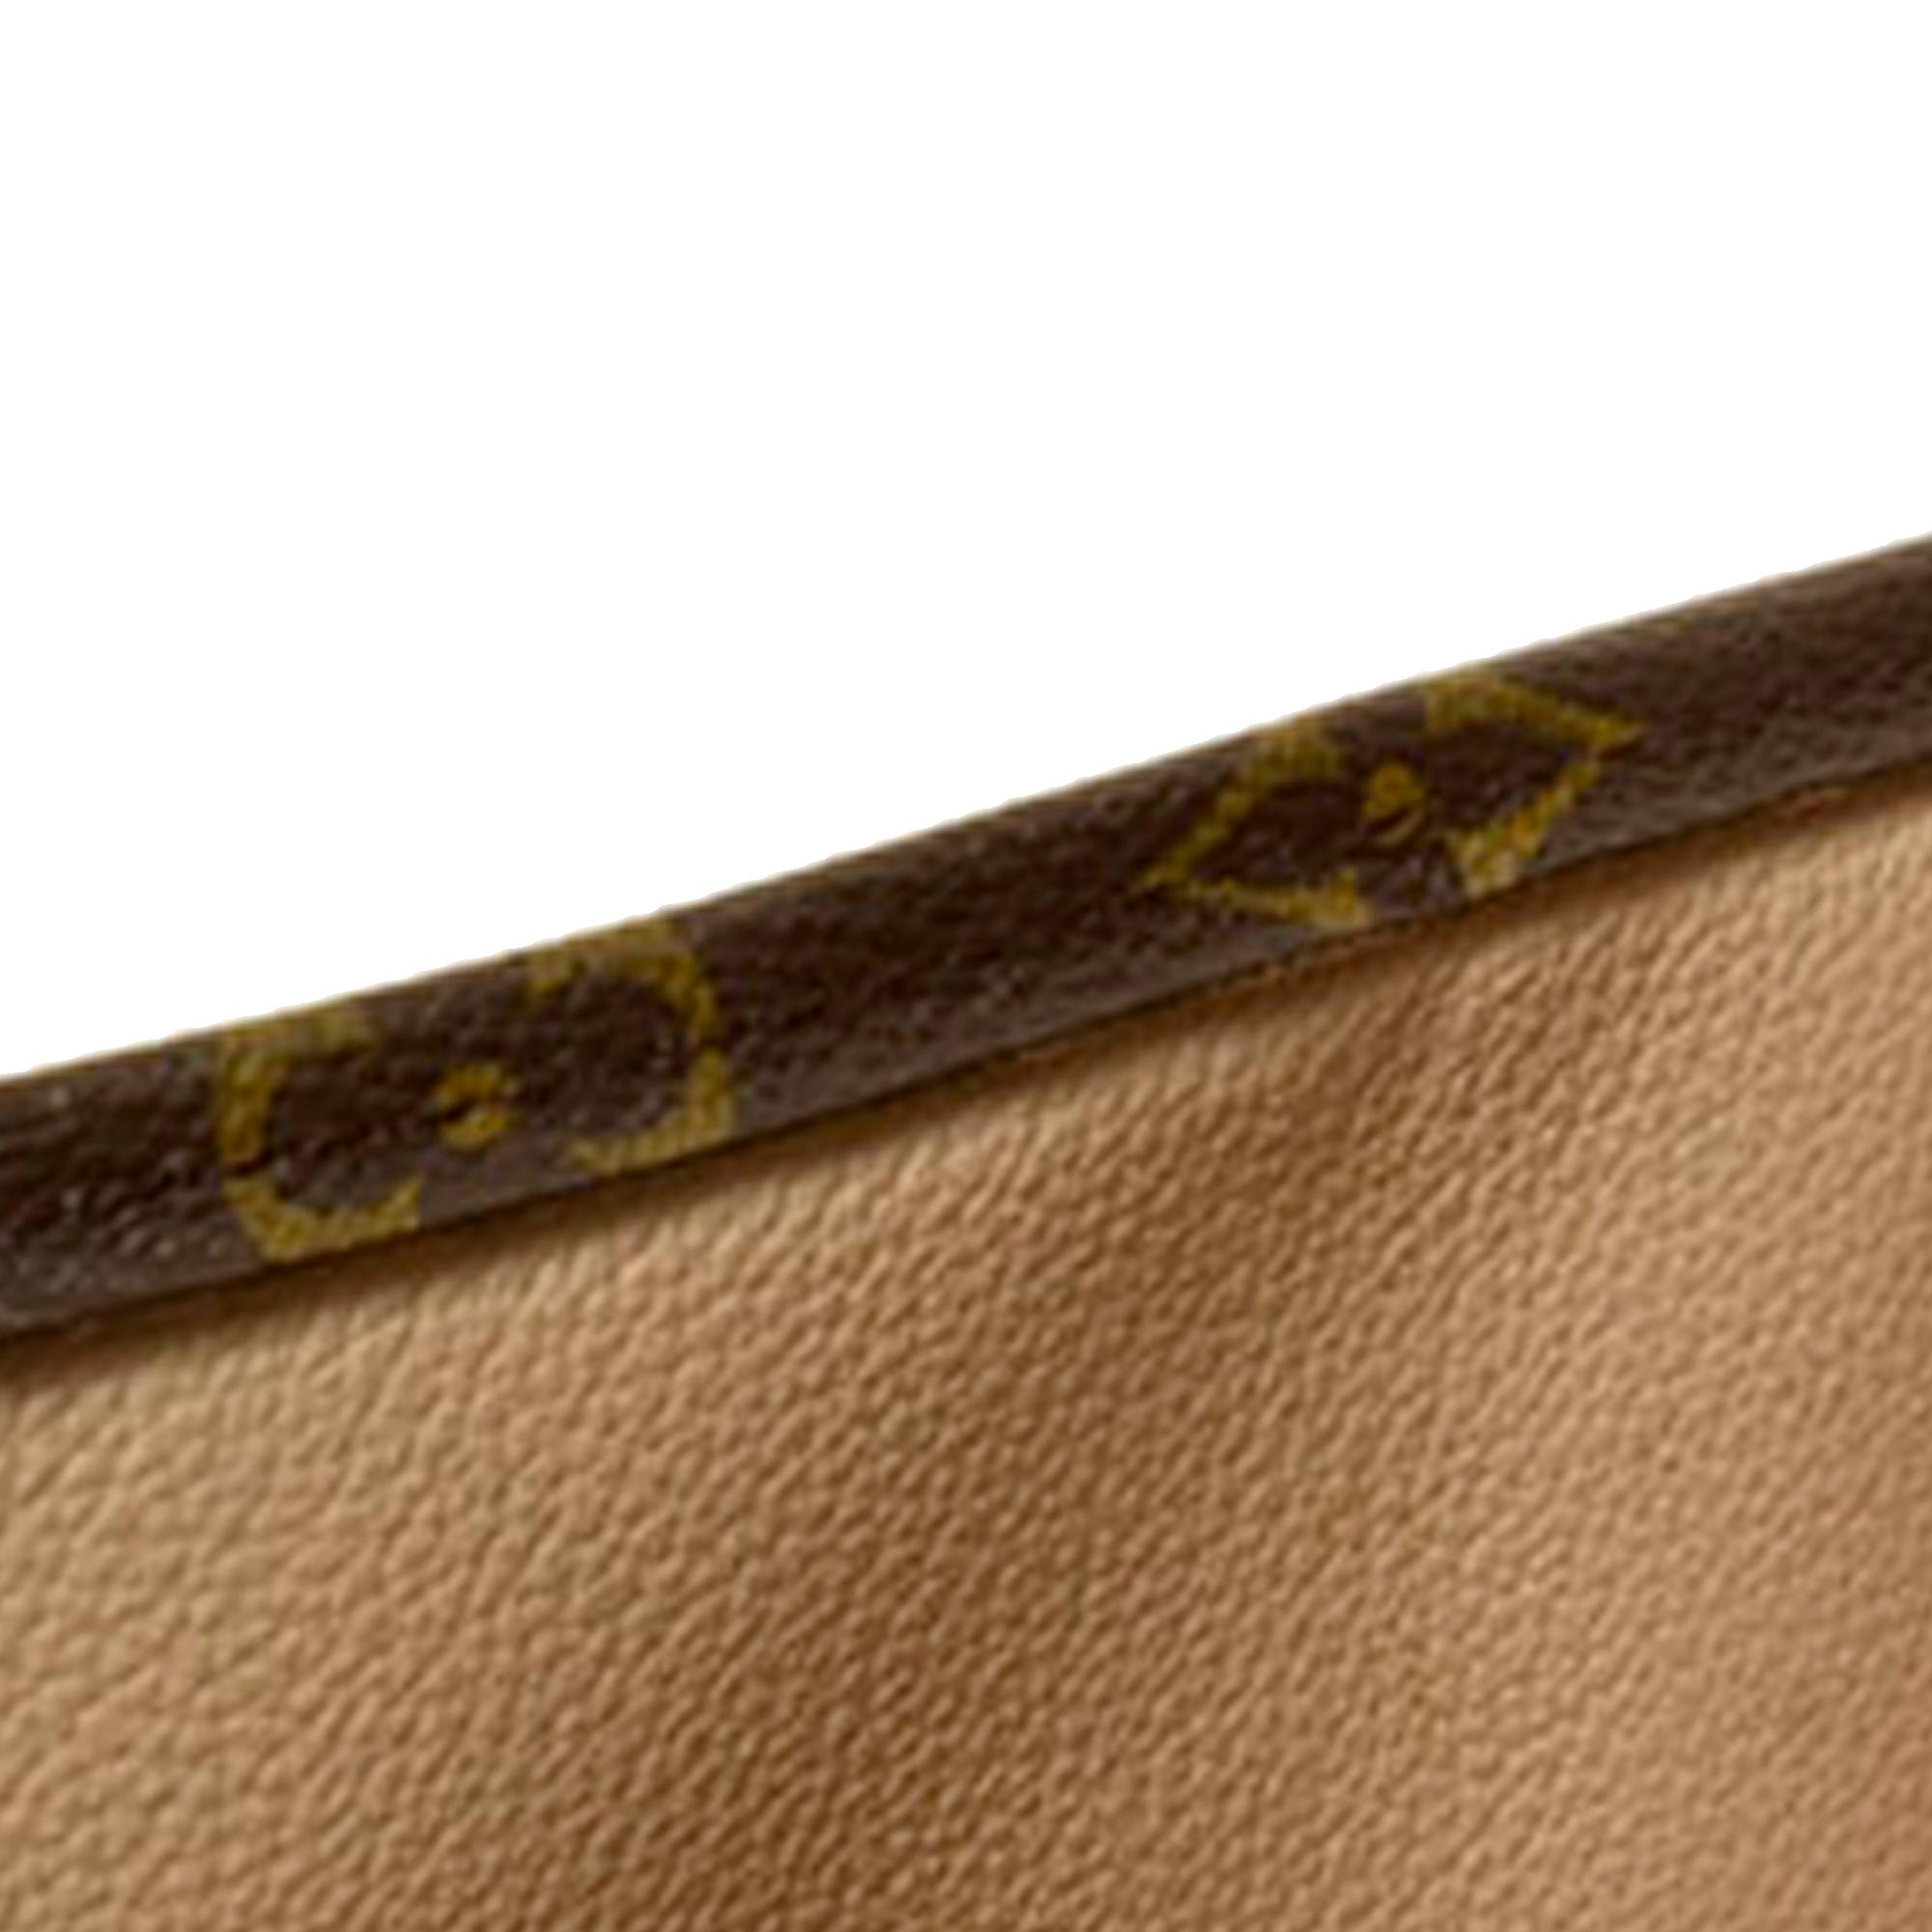 Louis Vuitton Monogram Sac Plat BB - Brown Totes, Handbags - LOU580413